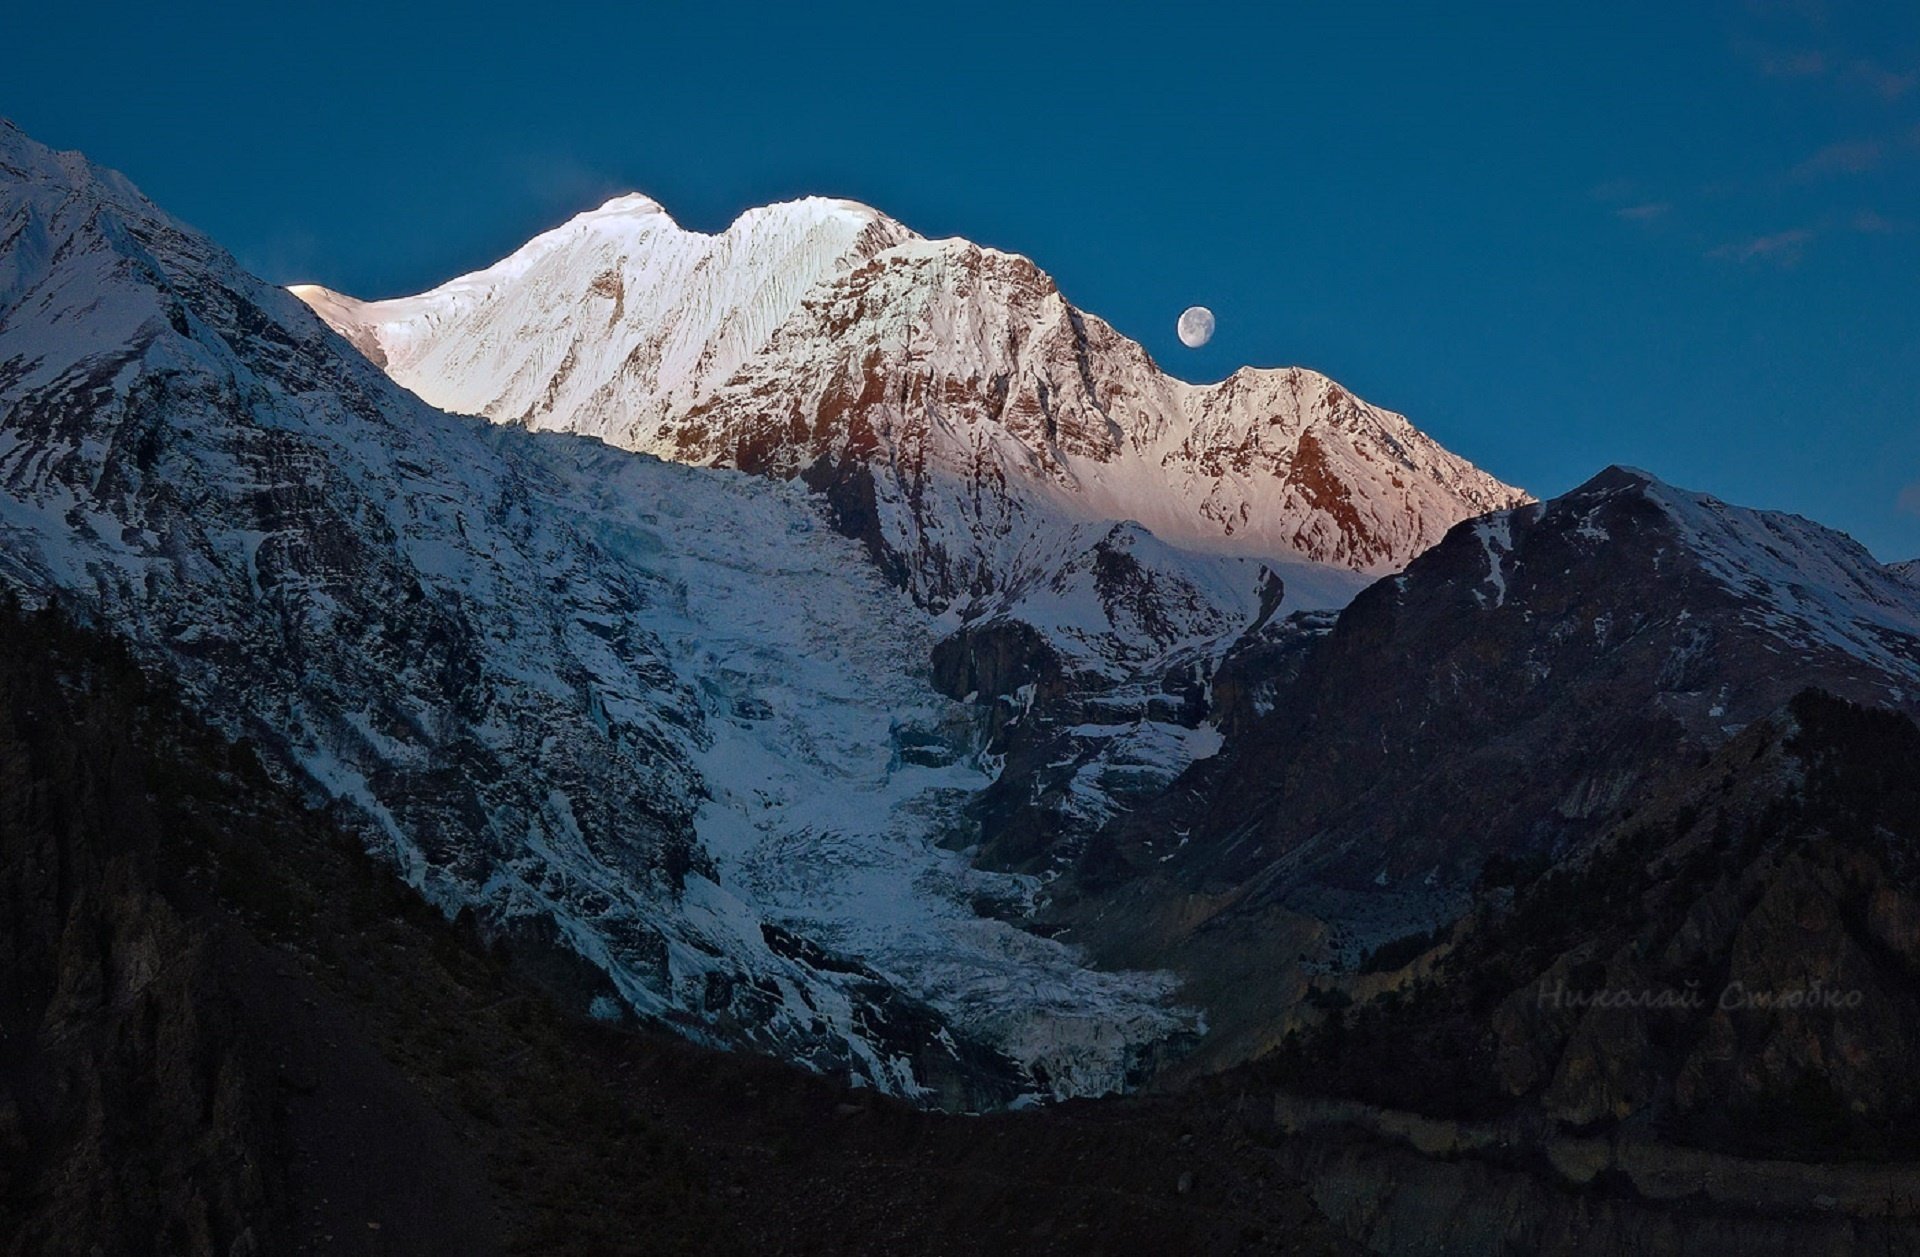 Г гималаи. Непал Гималаи. Канченджанга Гималаи Непал. Ледники Гималаев. Индия горы Гималаи ледники.